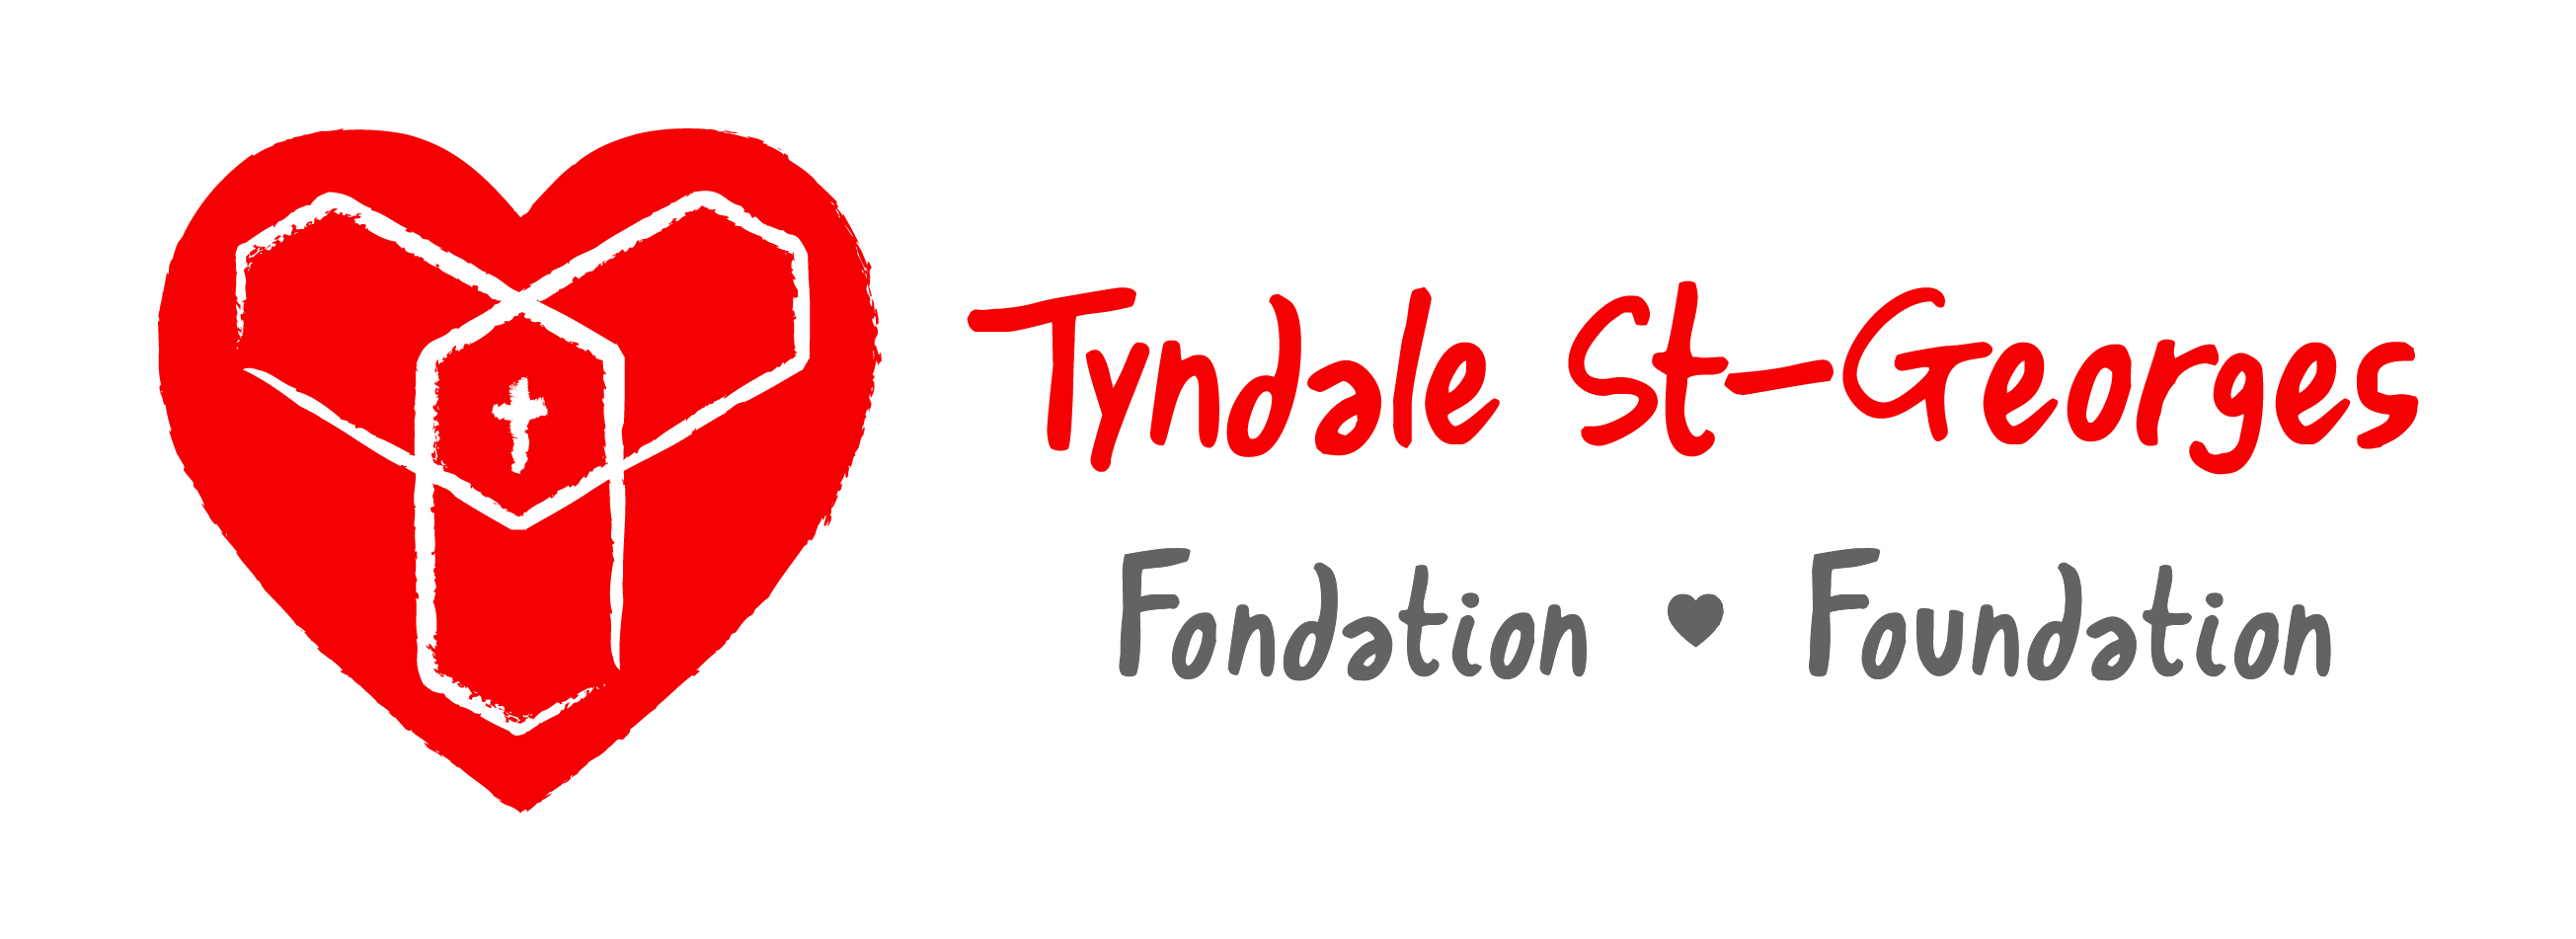 Fondation Du Centre Communautaire Tyndale St-Georges